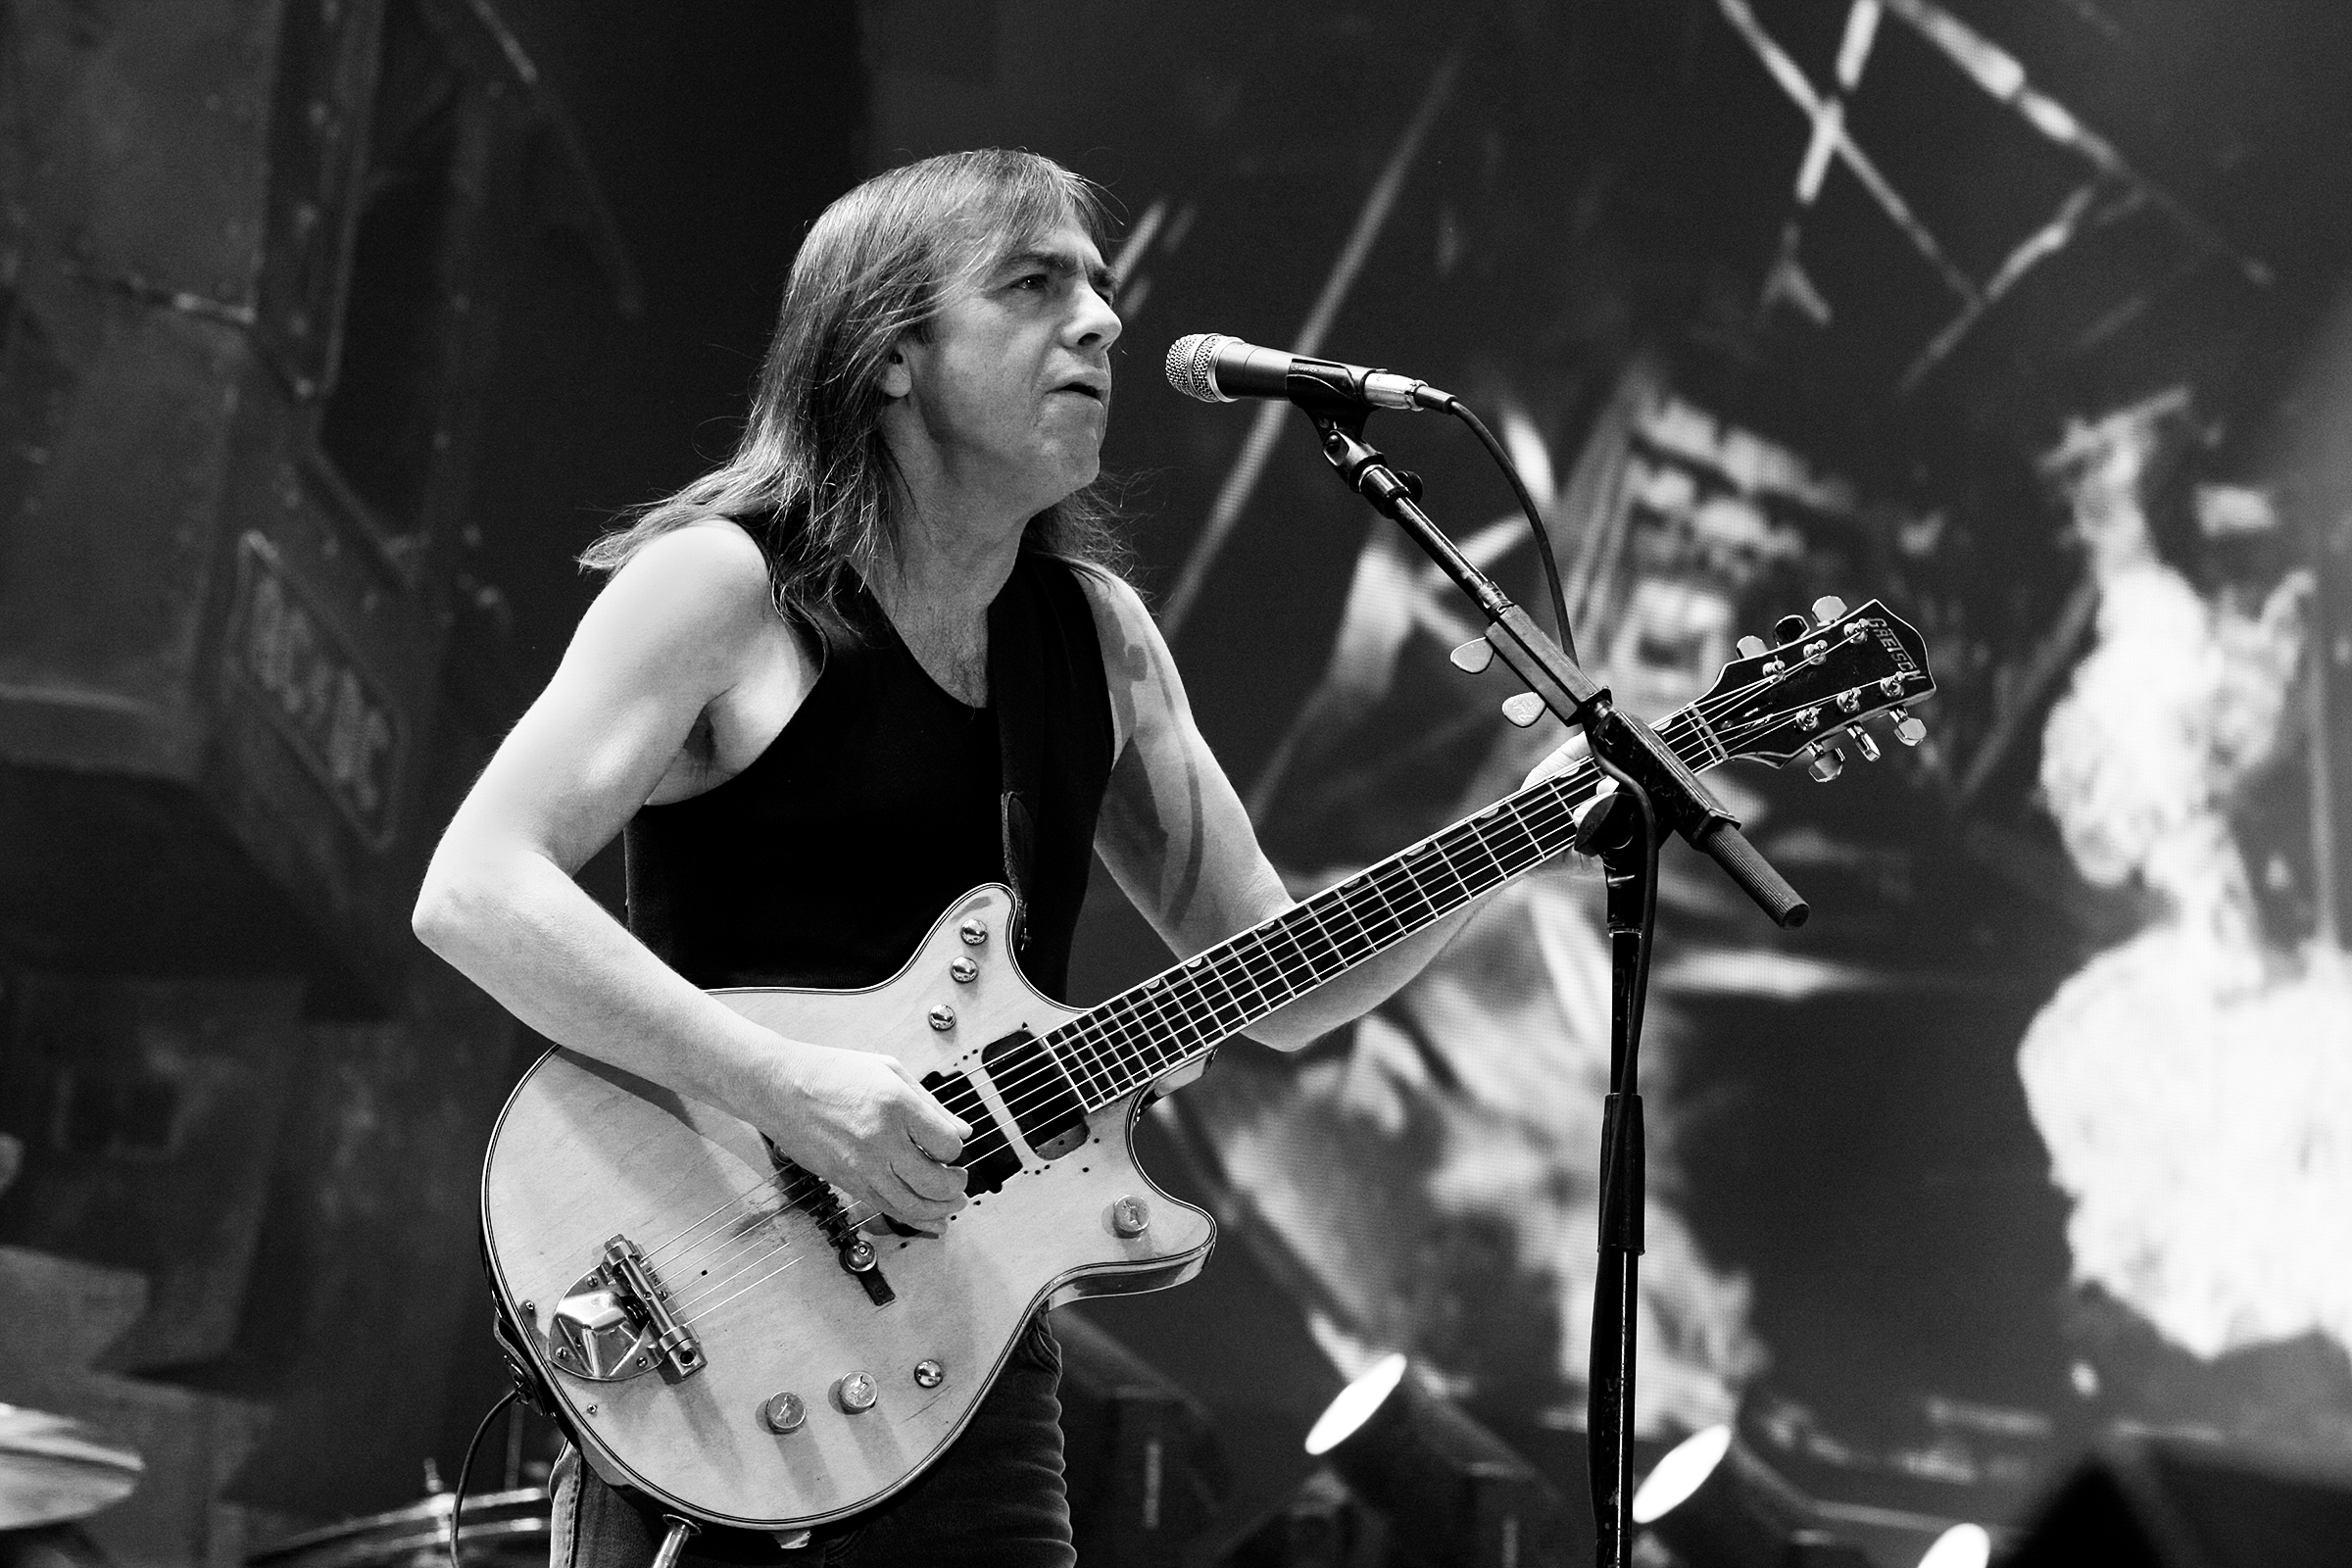 18 ноября умер один из основателей австралийской группы AC/DC Малькольм Янг. Гитаристу было 64 года, в последнее время он страдал от деменции.

Группу AC/DC Янг основал вместе со своим младшим братом Ангусом в 1973 году. Журнал Classic Rock в 2009 году включил их в список величайших гитаристов всех времен.
